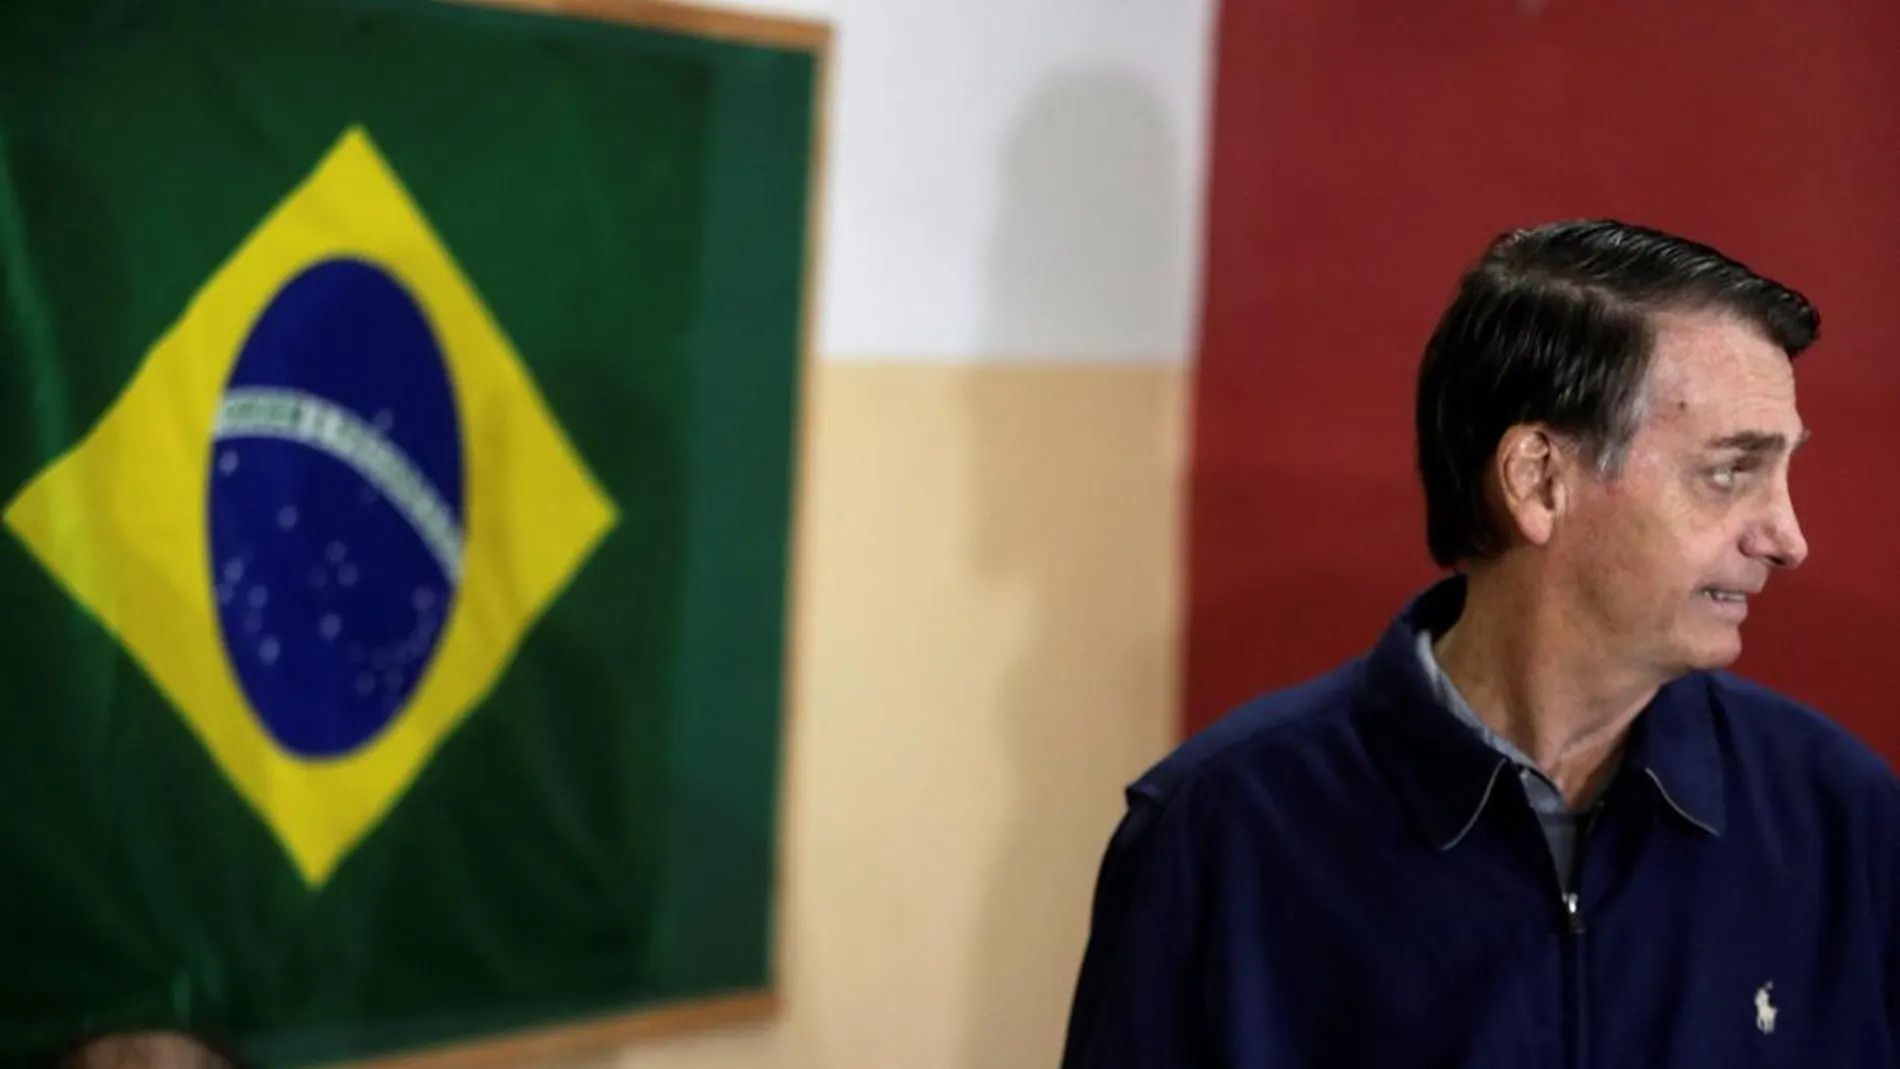 El candidato ultraderechista Jair Bolsonaro, en una imagen de archivo / Efe